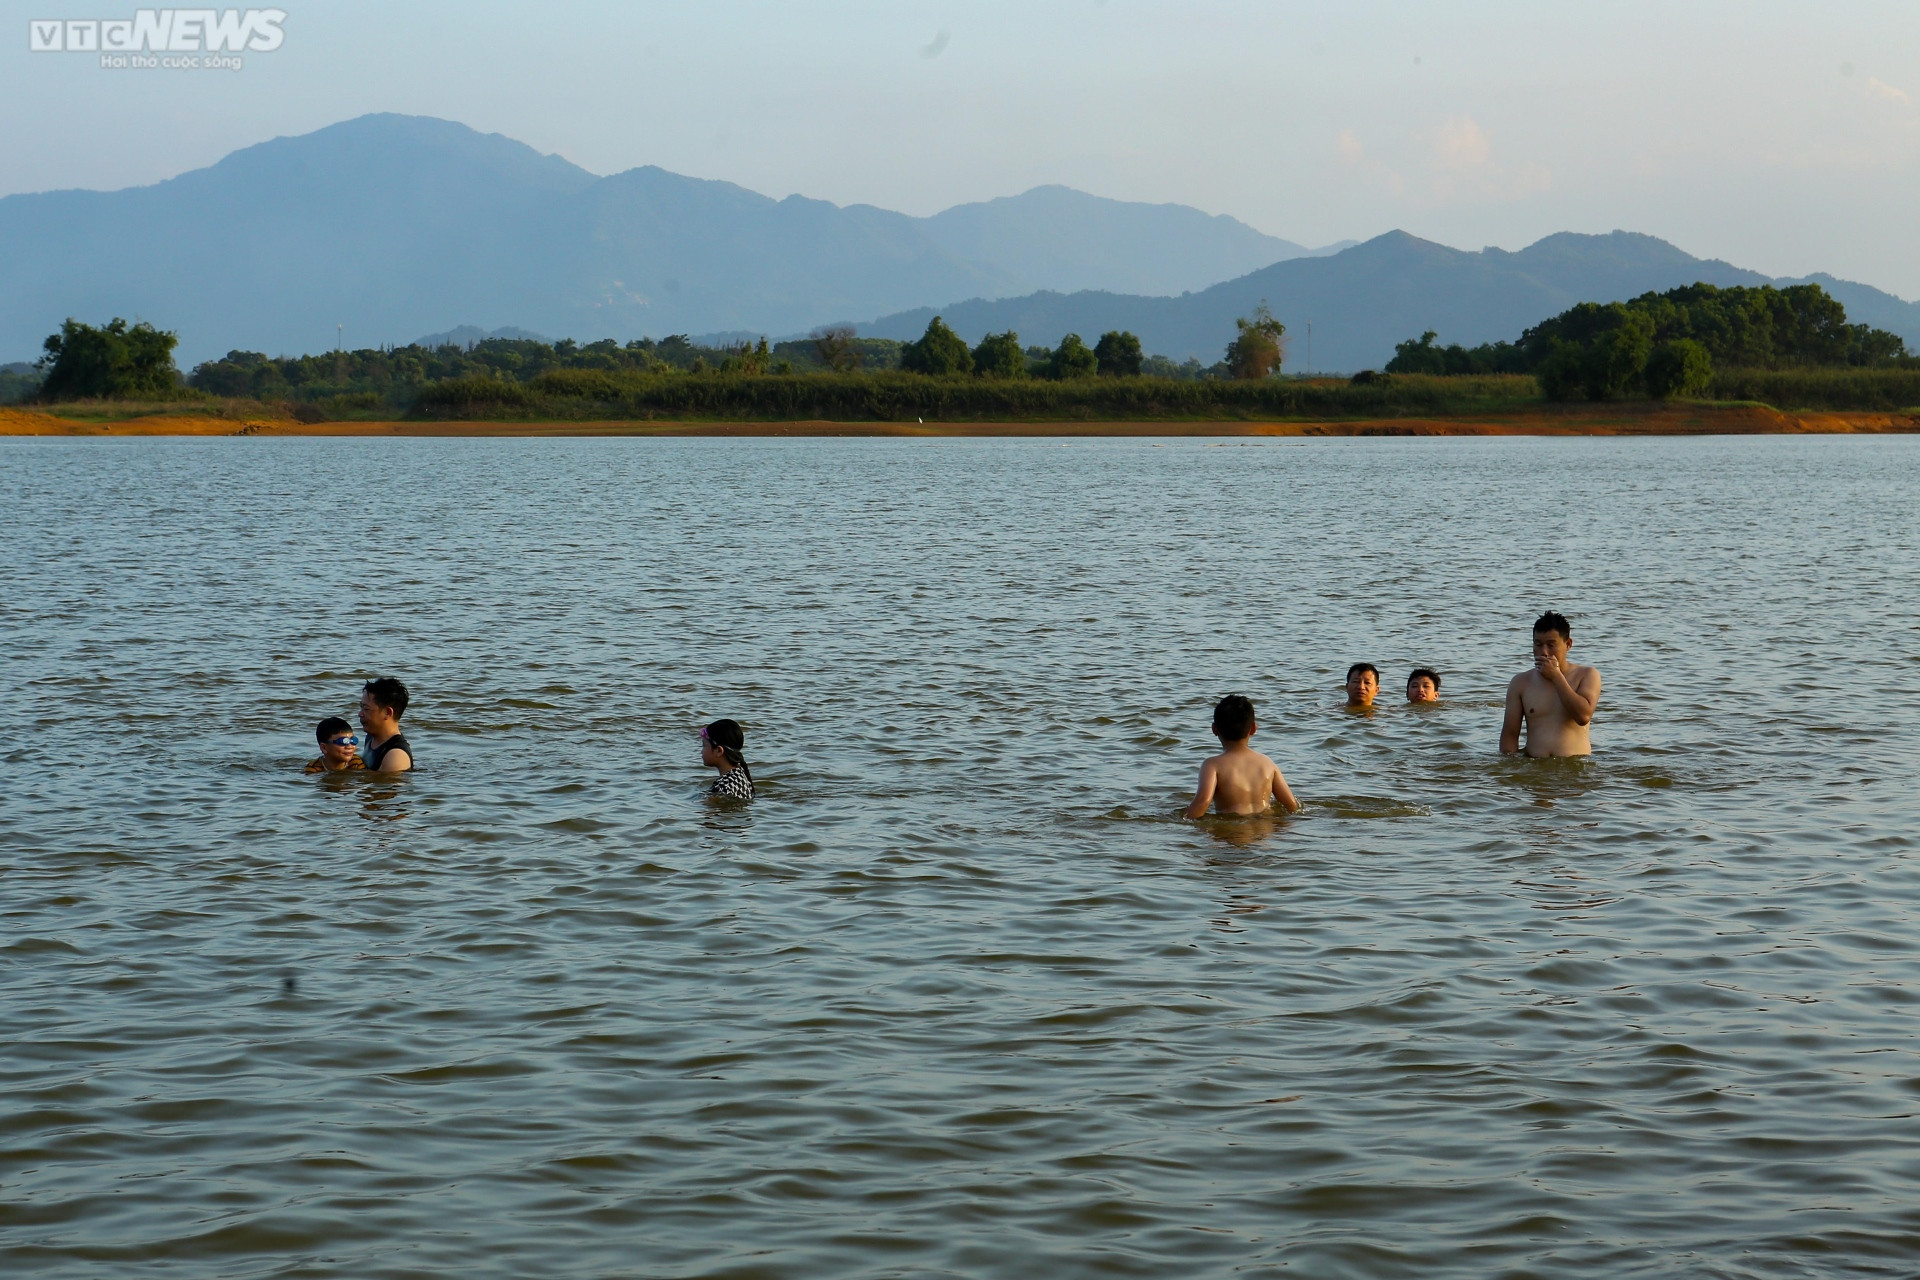 Chiều hè đổ lửa, người dân Hà Nội tìm sông hồ giải nhiệt - 1